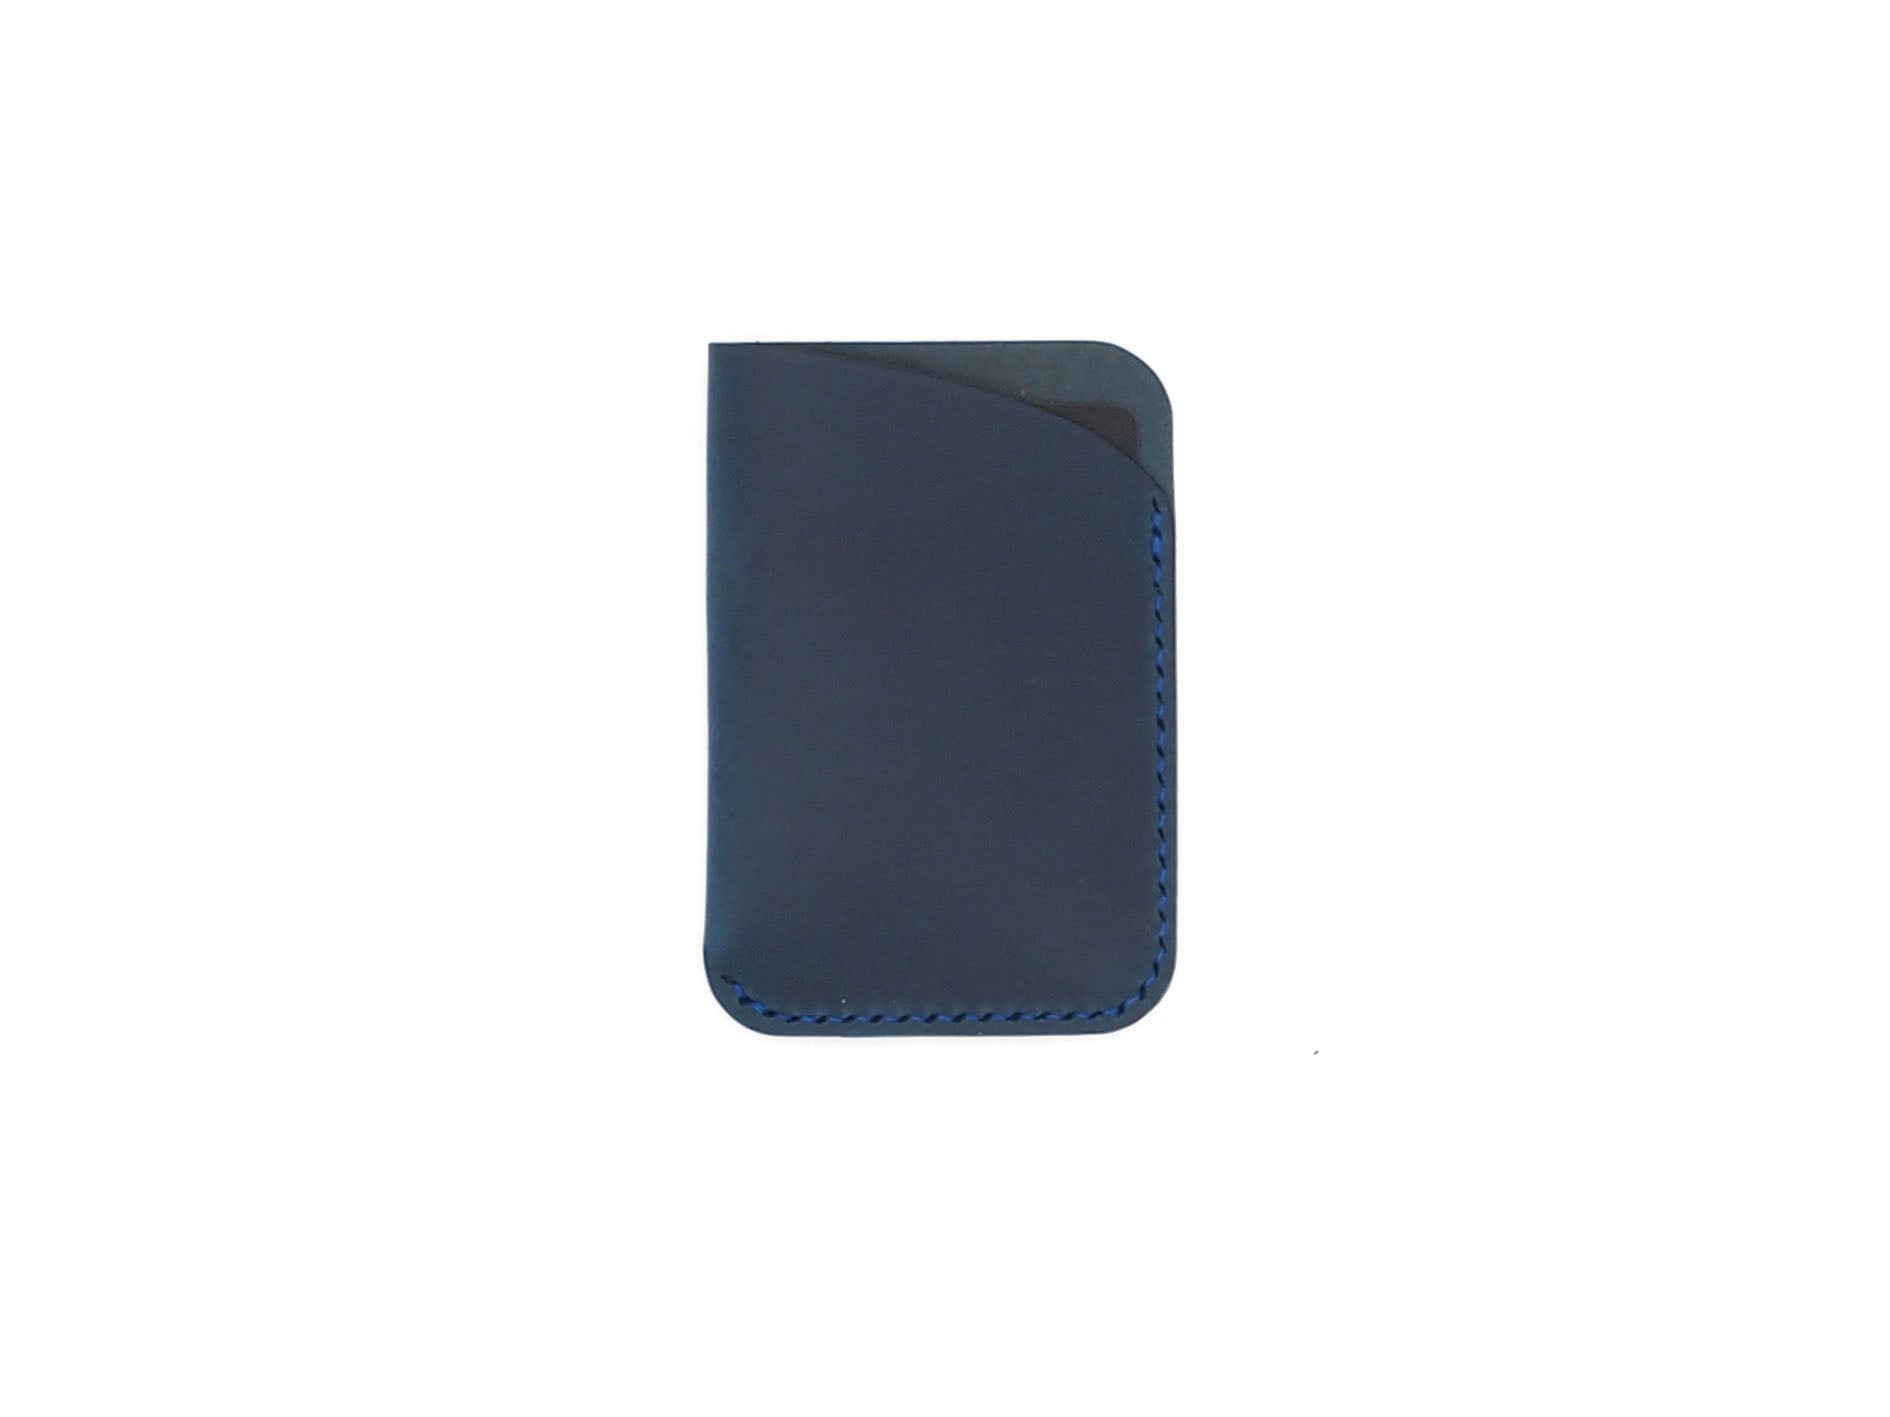 Leeway - Card Sleeve in Blue Buttero